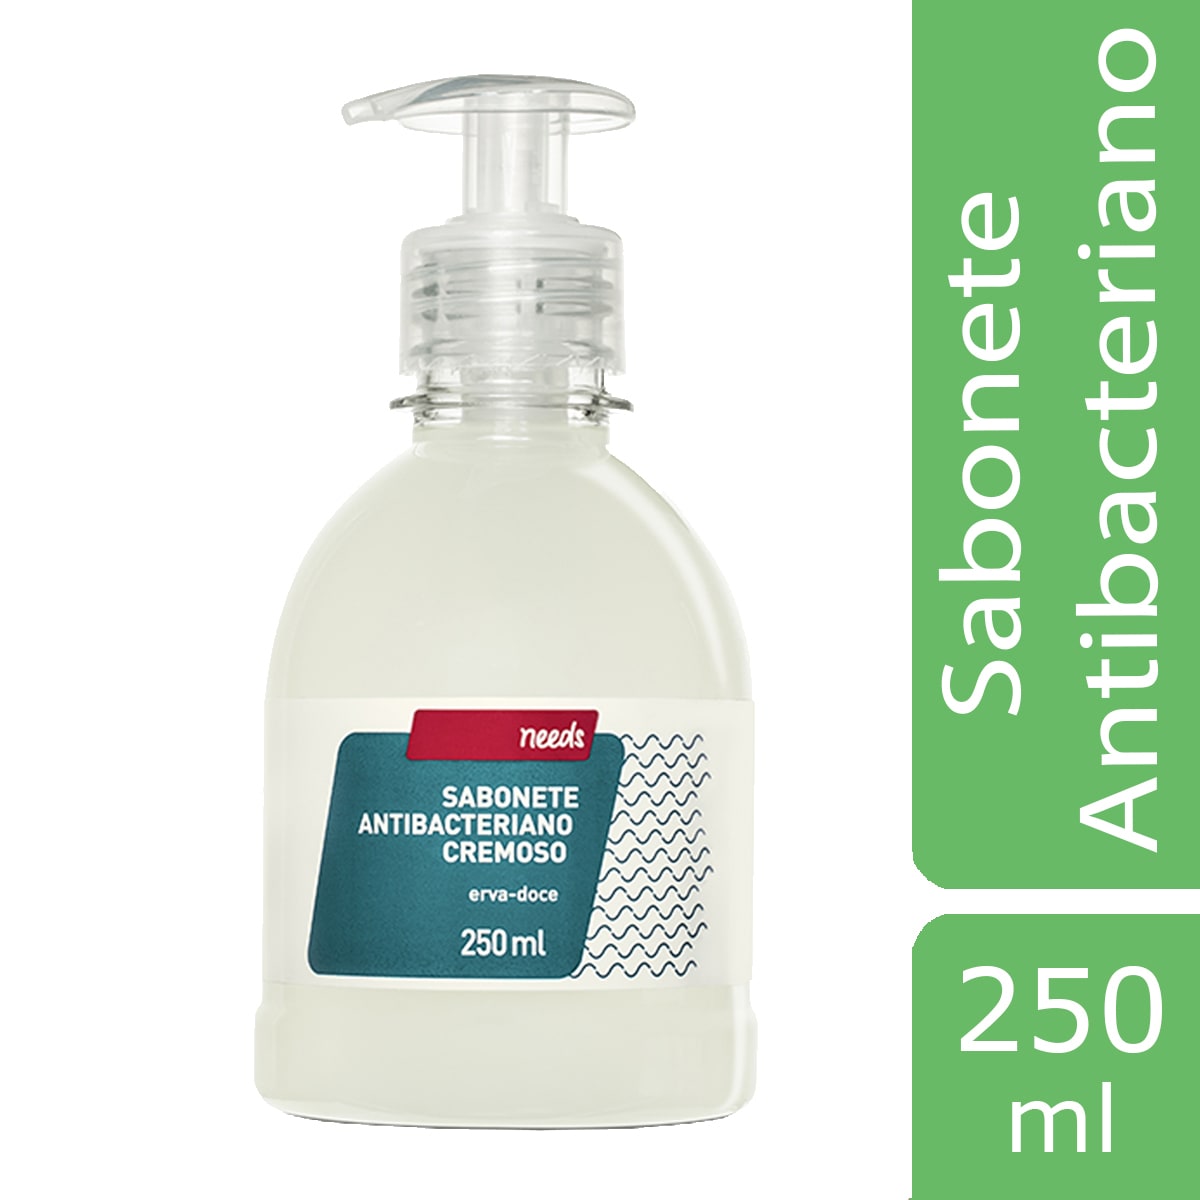 Sabonete Antibacteriano Cremoso Needs 250ml